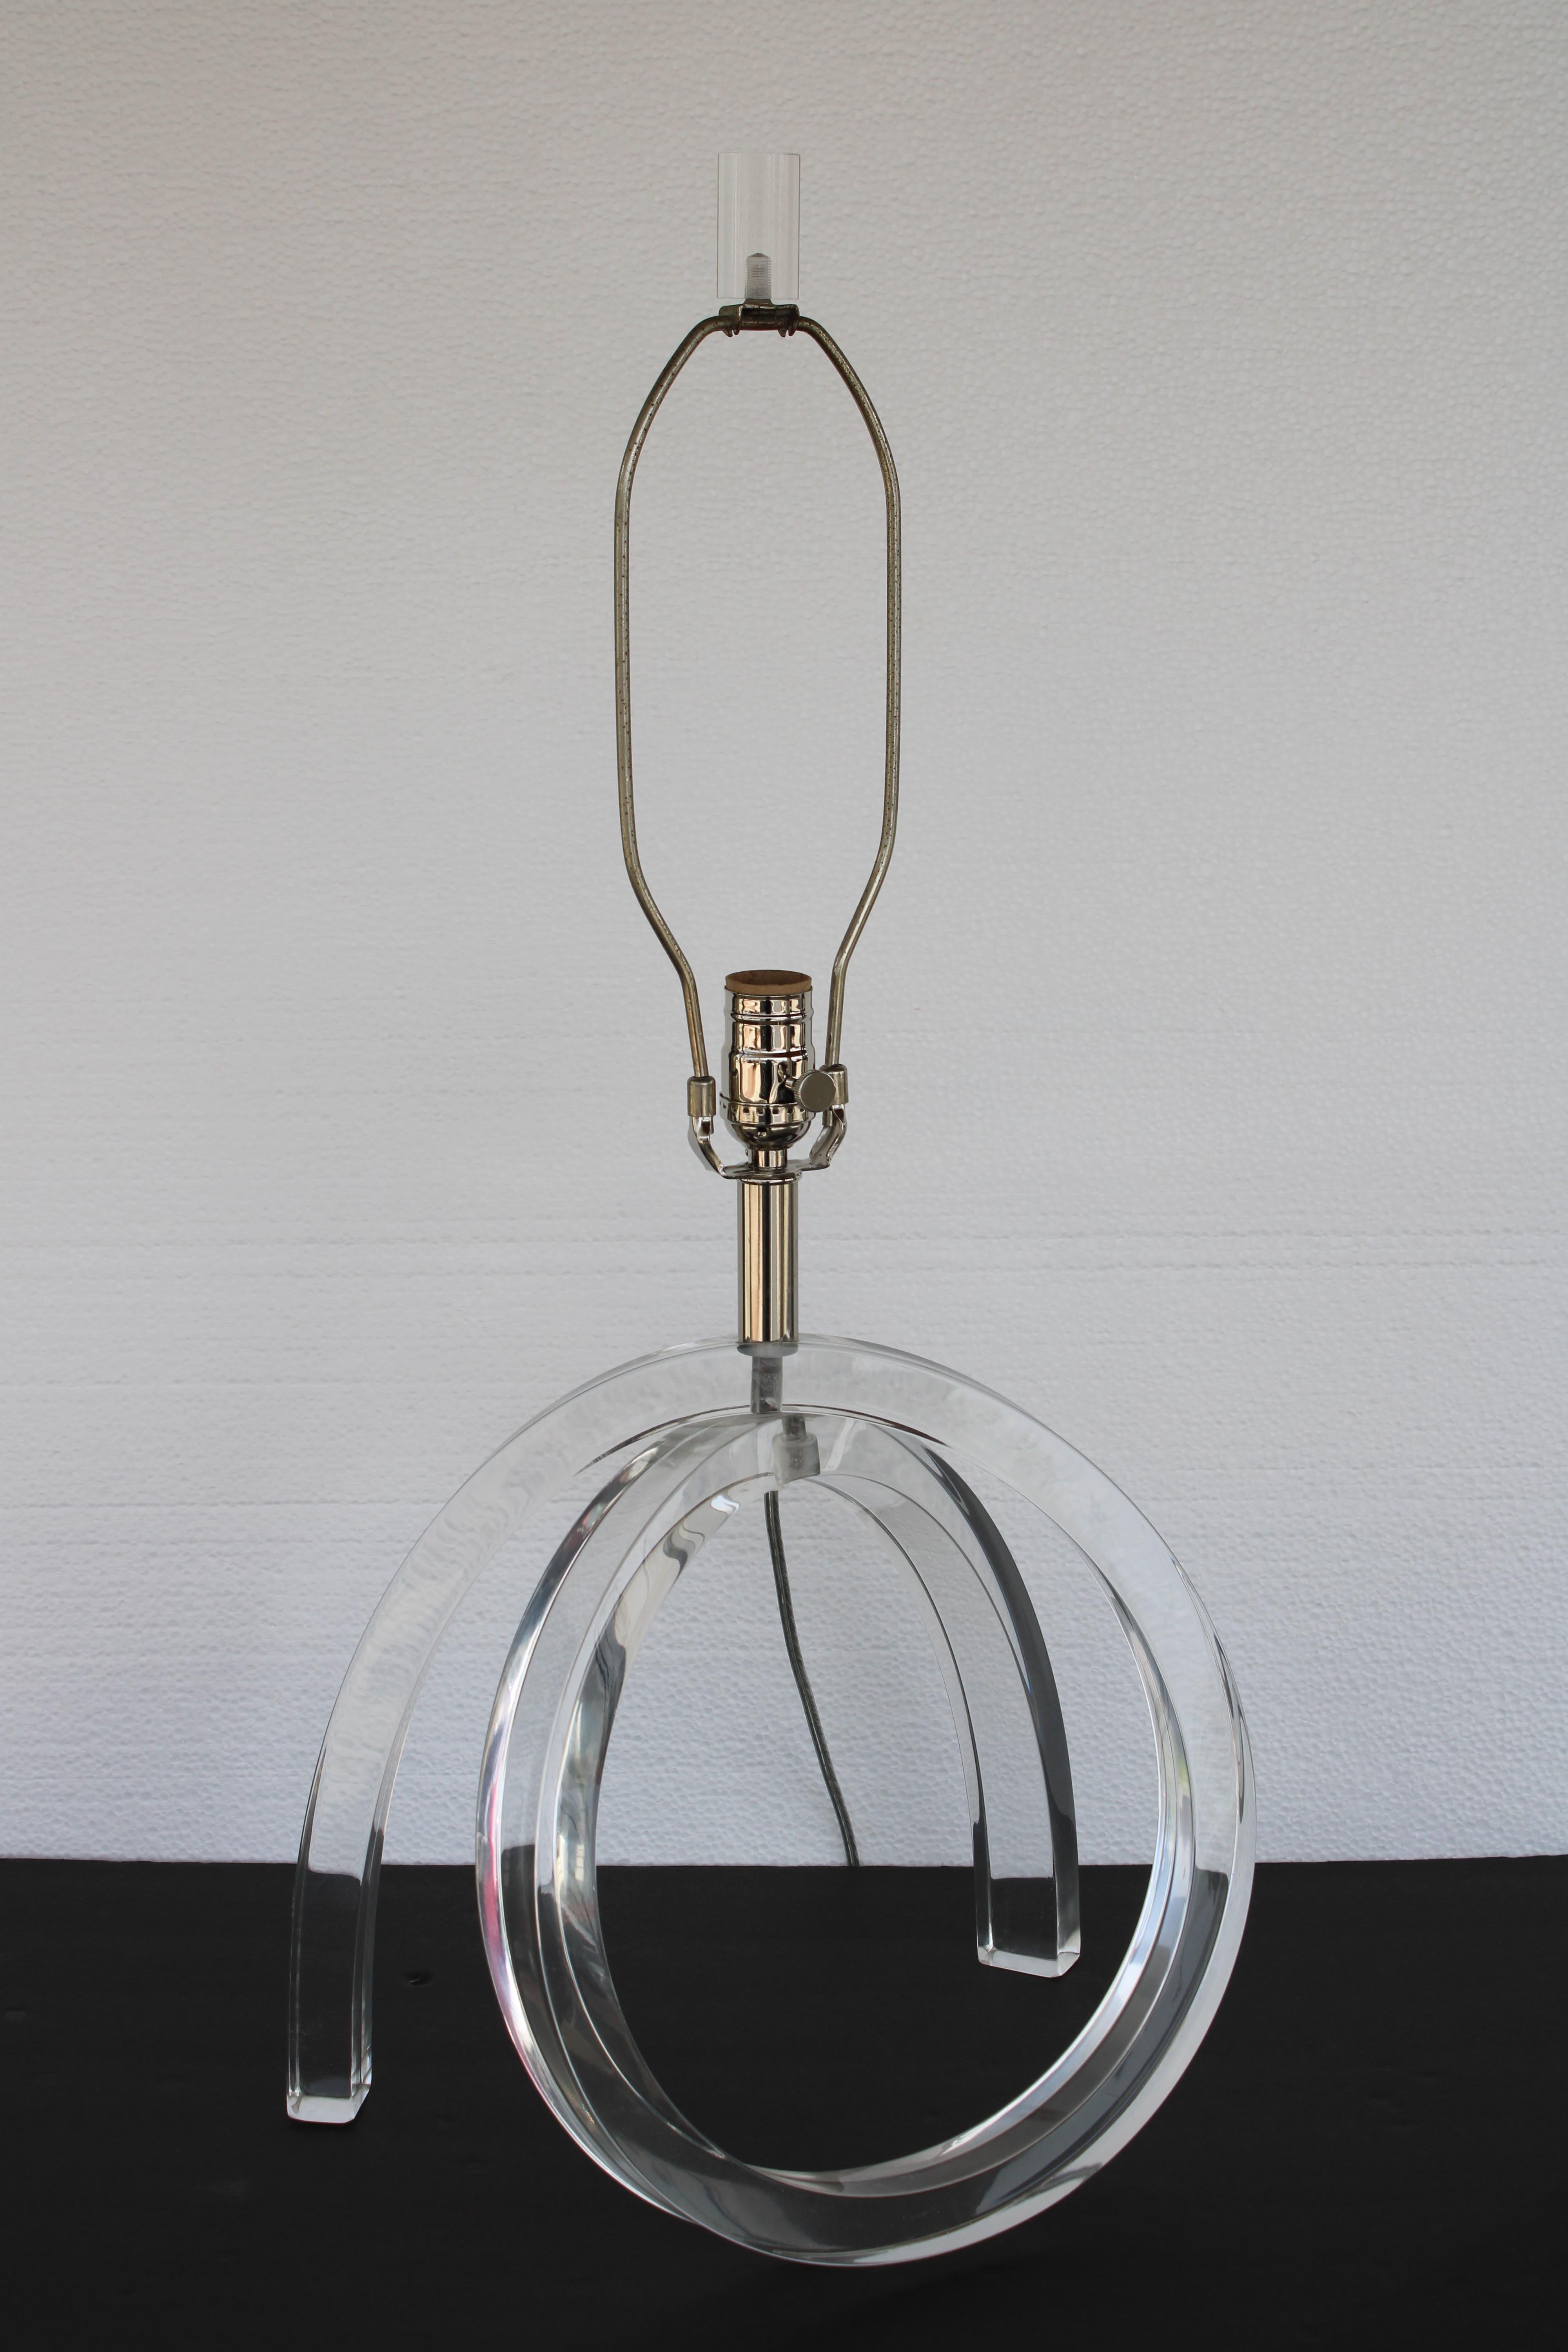 Lampe en lucite attribuée à Astrolite pour la Ritts Company, Los Angeles, CA.  La lampe mesure 14